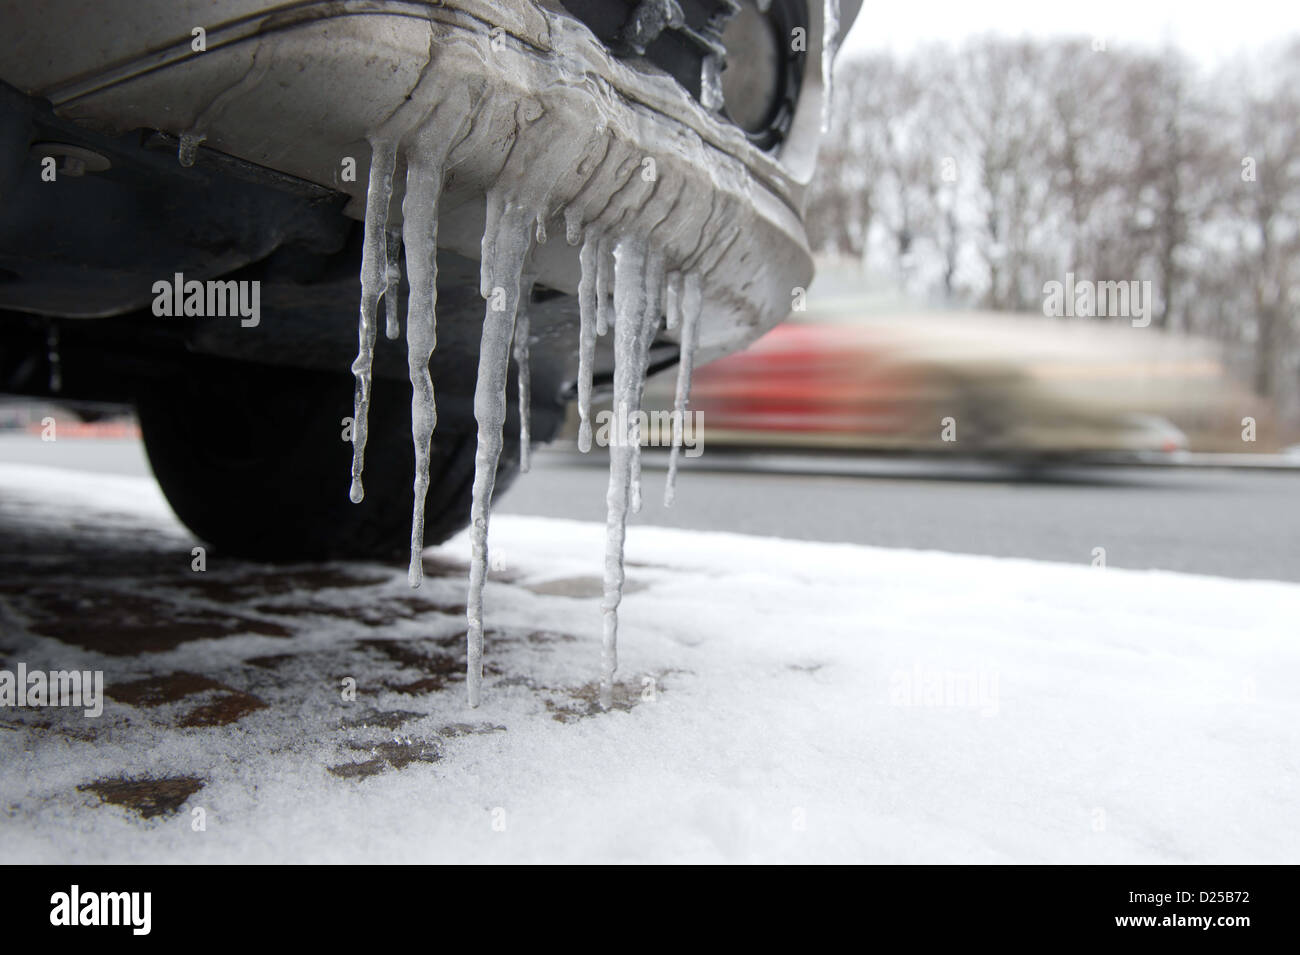 Eiszapfen hängen an einen Mietwagen in Berlin, Deutschland, 14. Januar 2013. Laut Meteorologen wird das Wetter kalt und winterlich bleiben. Foto: Maurizio Gambarini Stockfoto